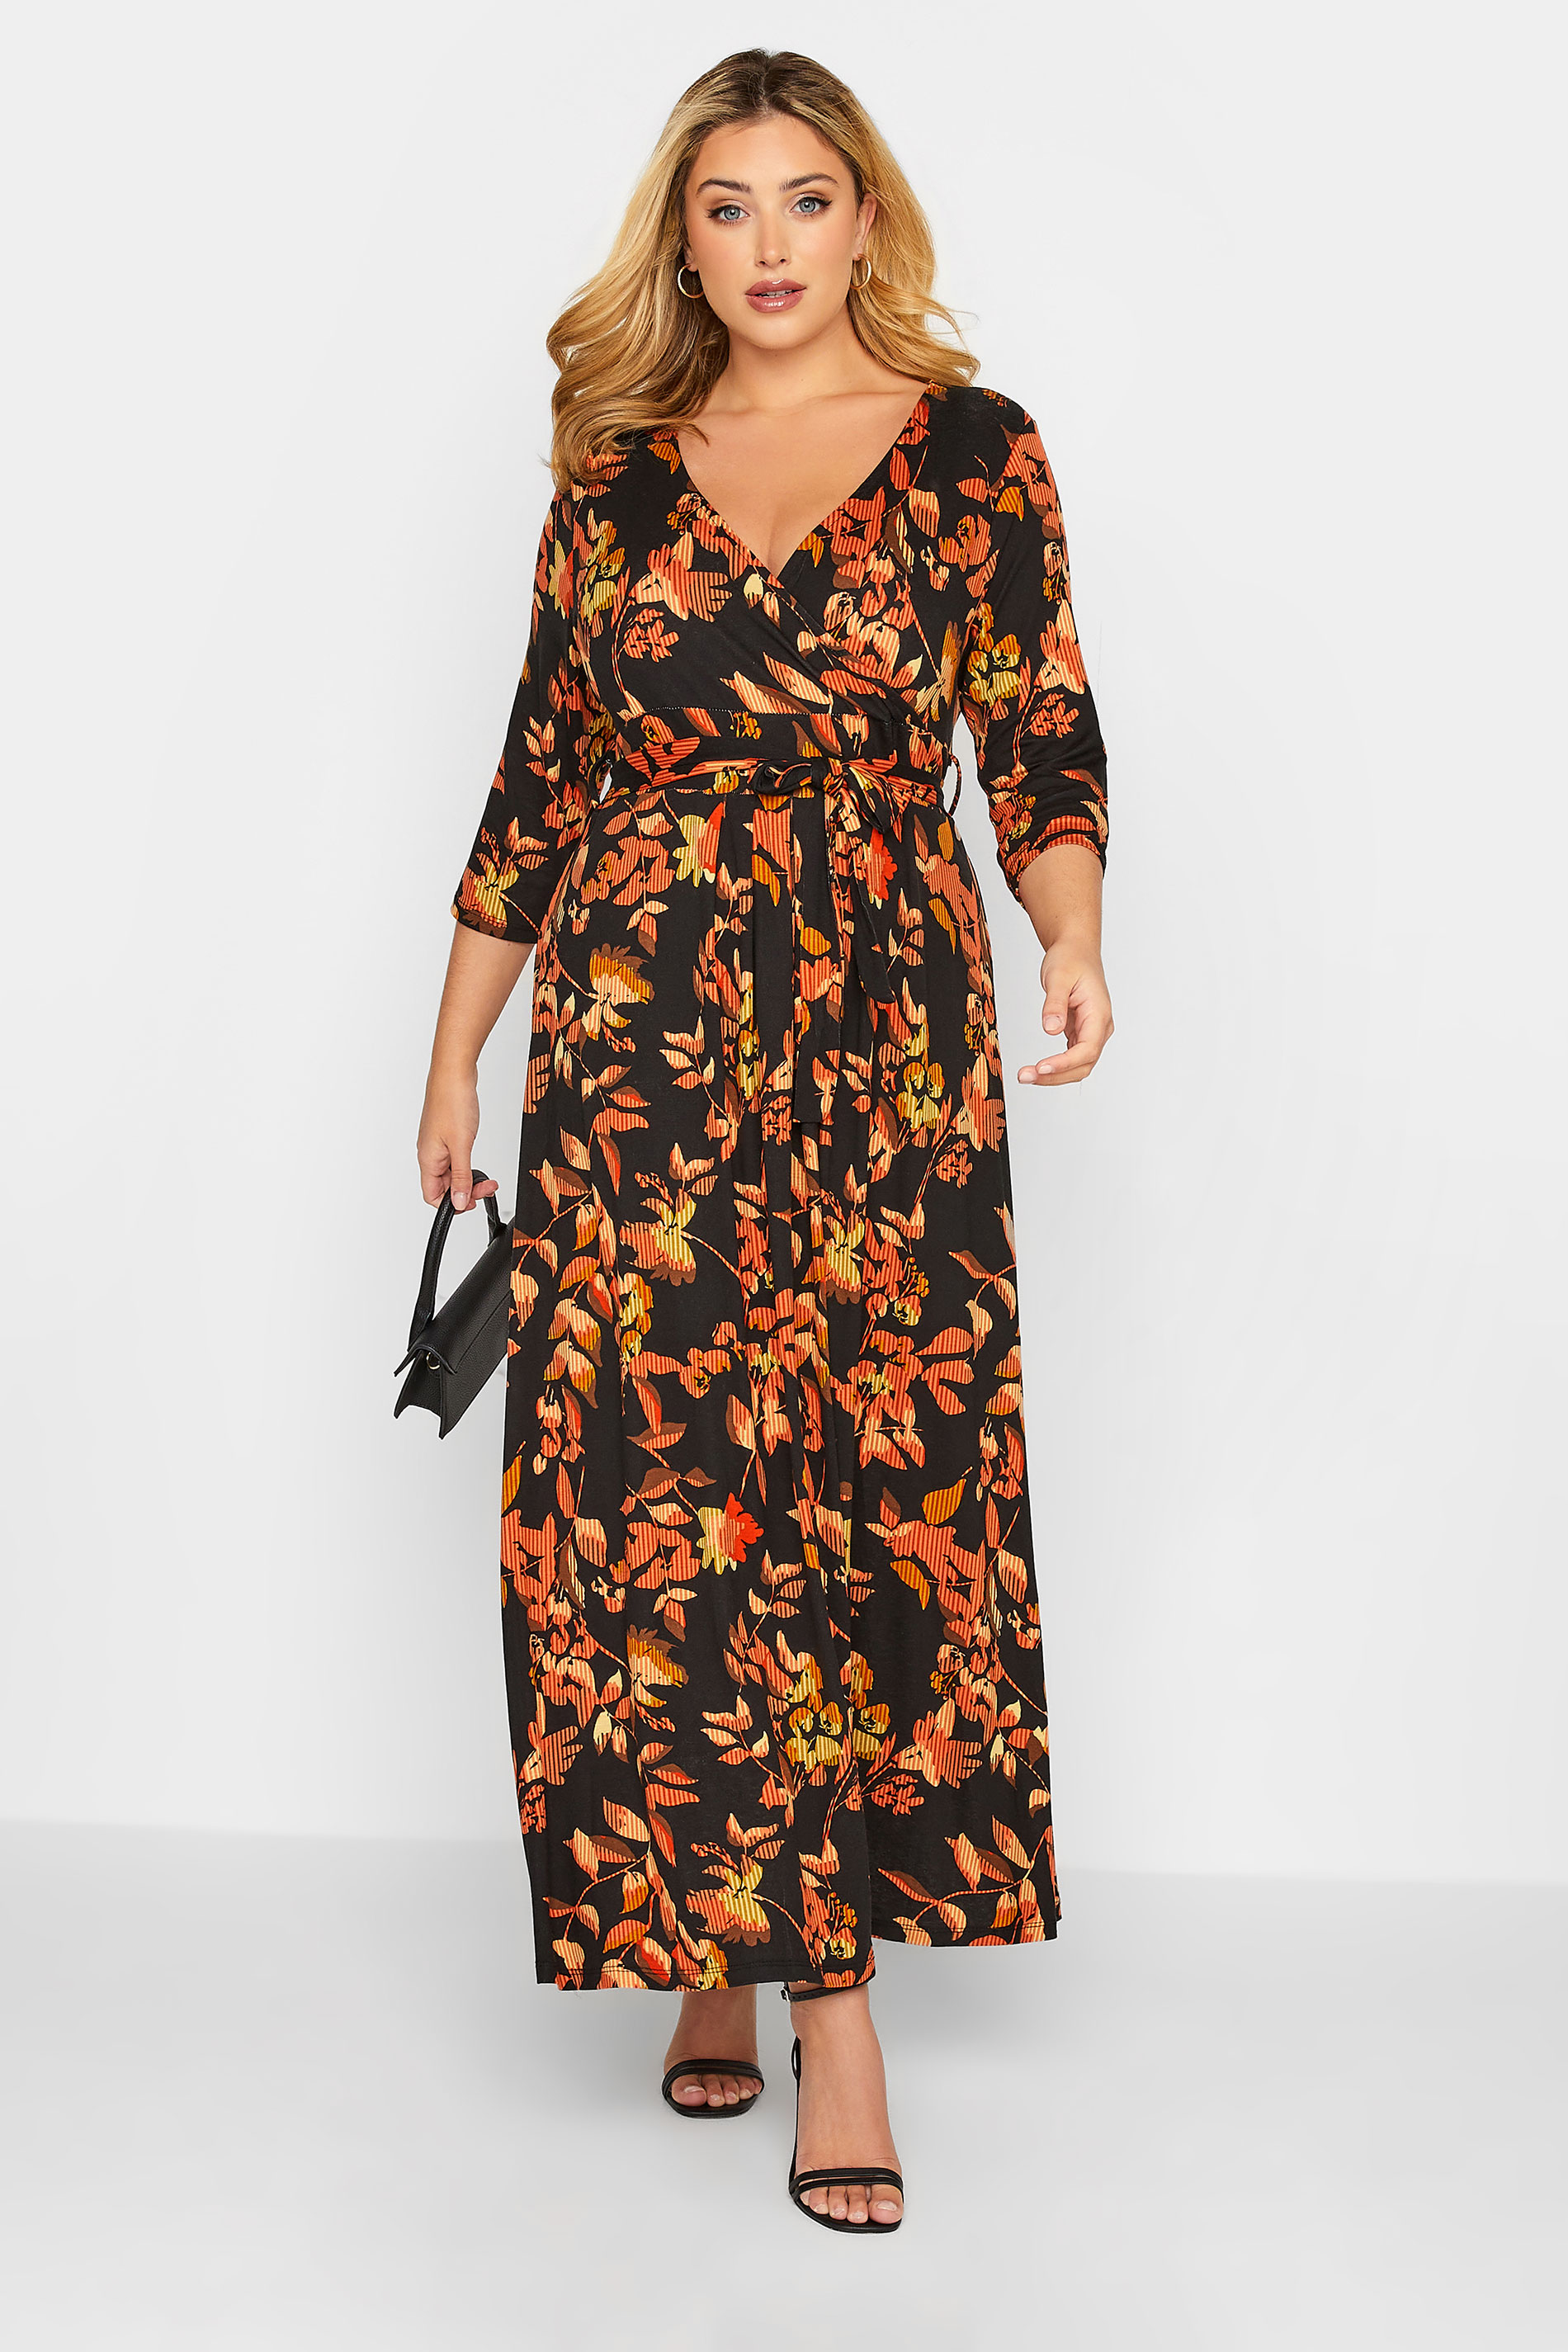 Curve Plus Size Orange & Black Leaf Print Maxi Wrap Dress | Yours Clothing  1